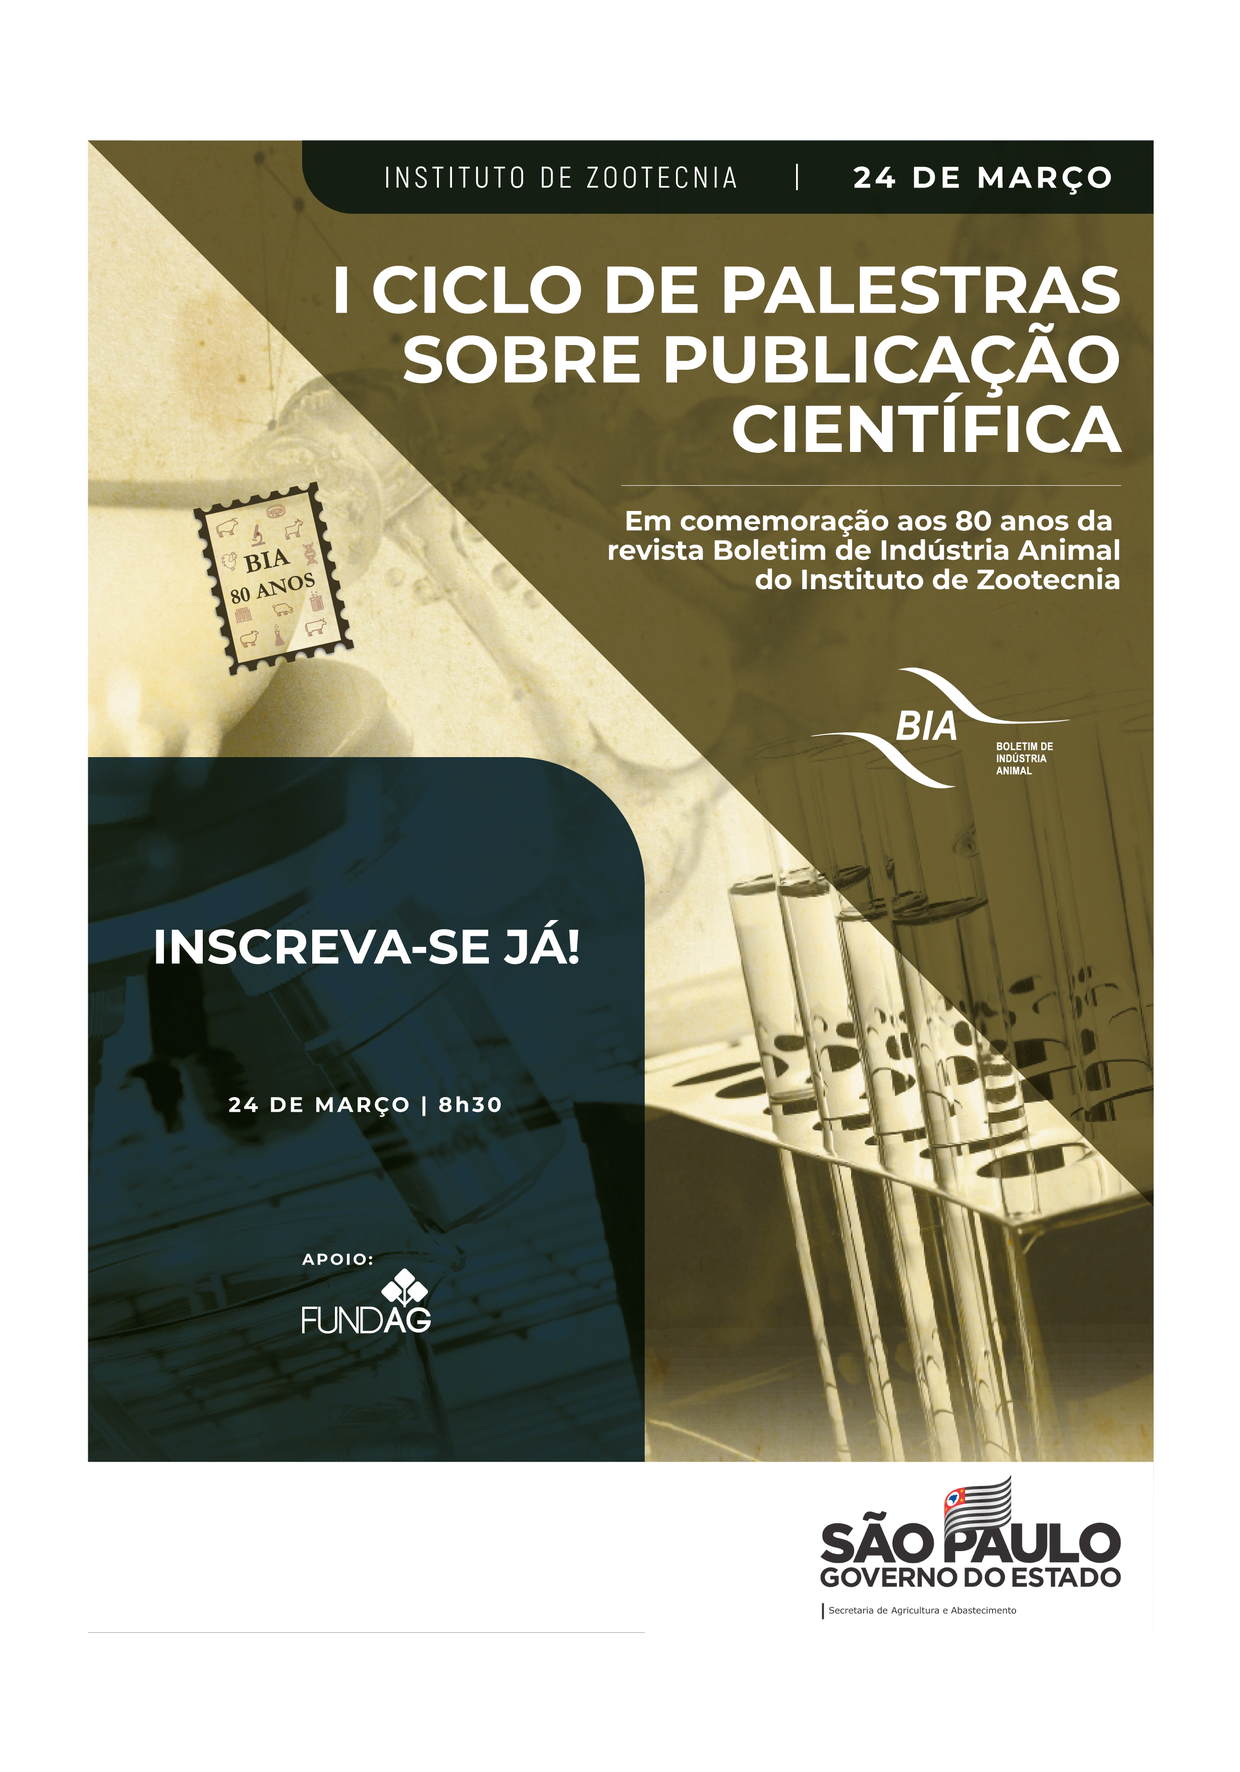 I CICLO DE PALESTRAS SOBRE PUBLICAÇÃO CIENTÍFICA